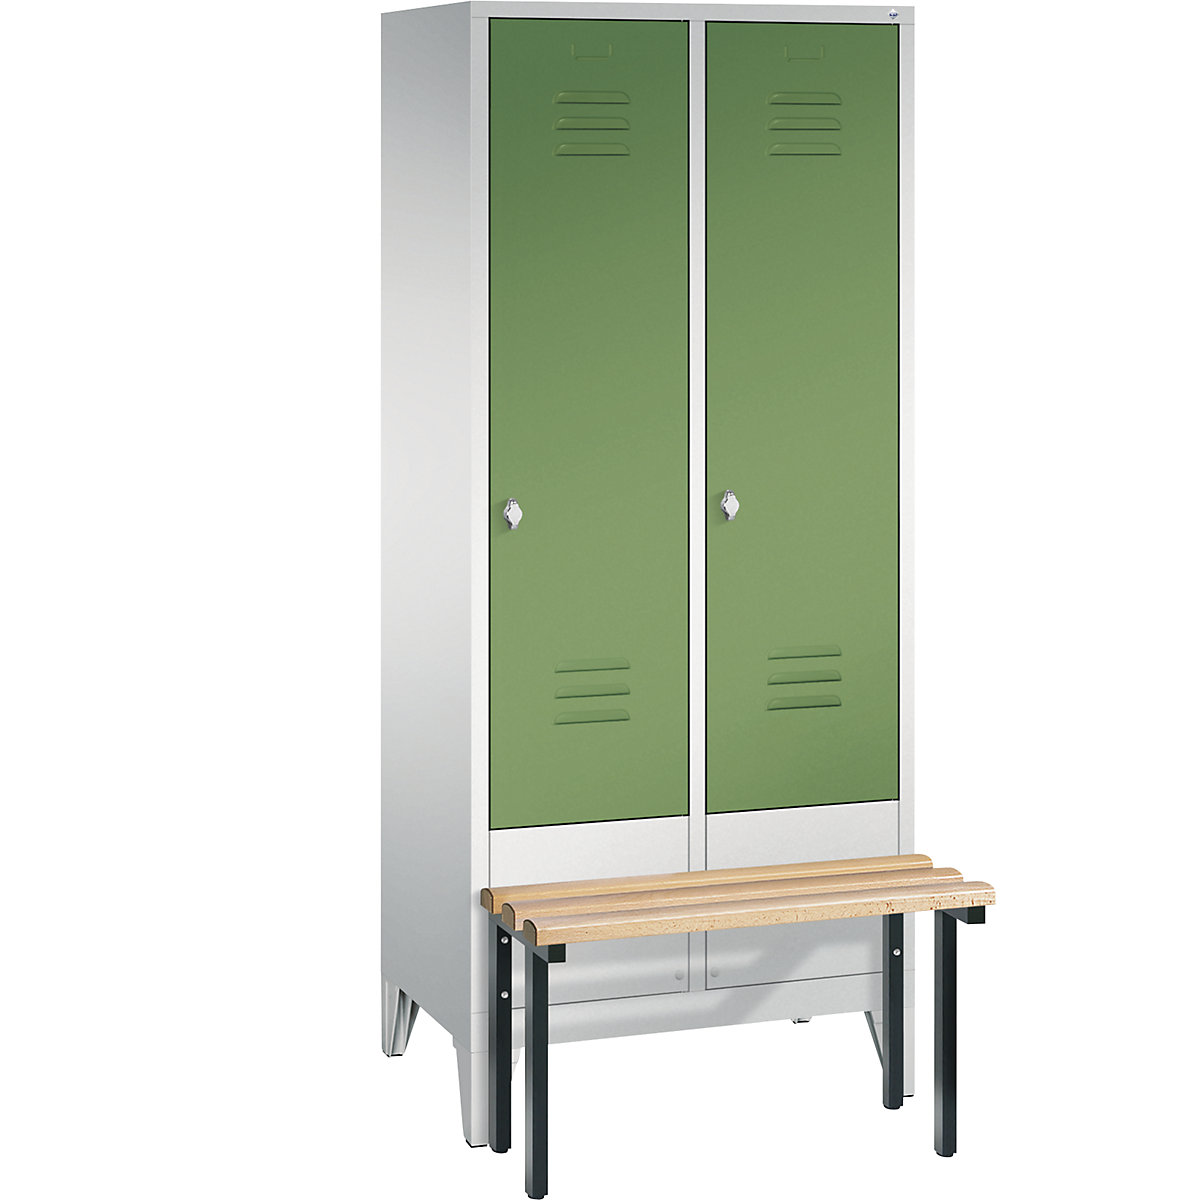 Garderobna omara CLASSIC s klopjo – C+P, 2 predelka, širina 400 mm/predelek, svetlo sive / reseda zelene barve-7